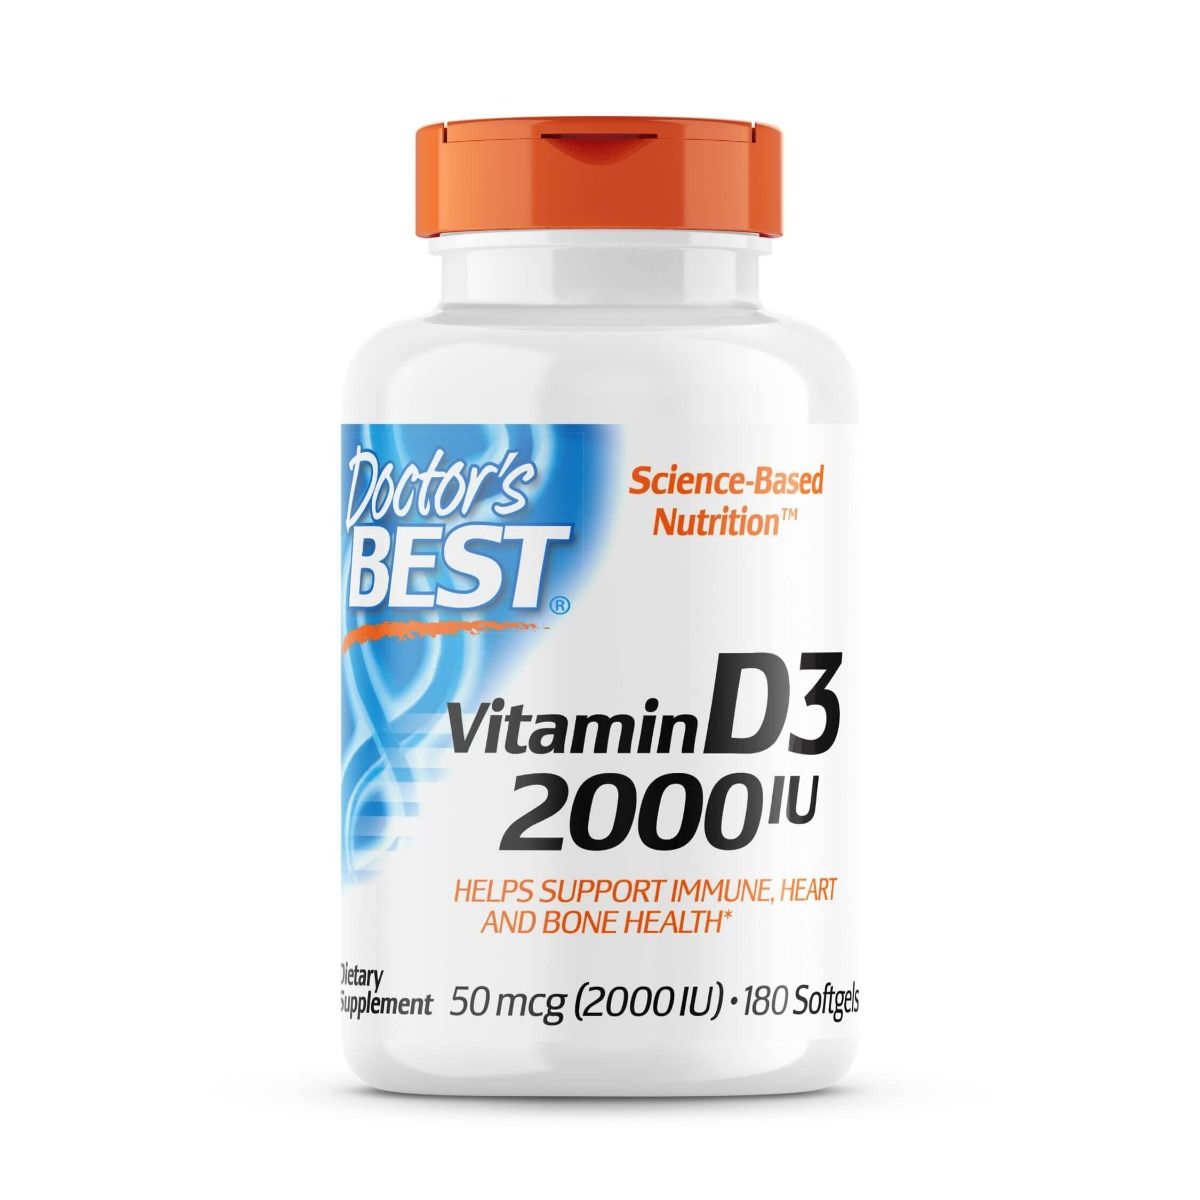 Photos - Vitamins & Minerals Doctors Best Doctor's Best Vitamin D3 50 mcg  180 Softgels PBW-P2292 (2,000 IU)